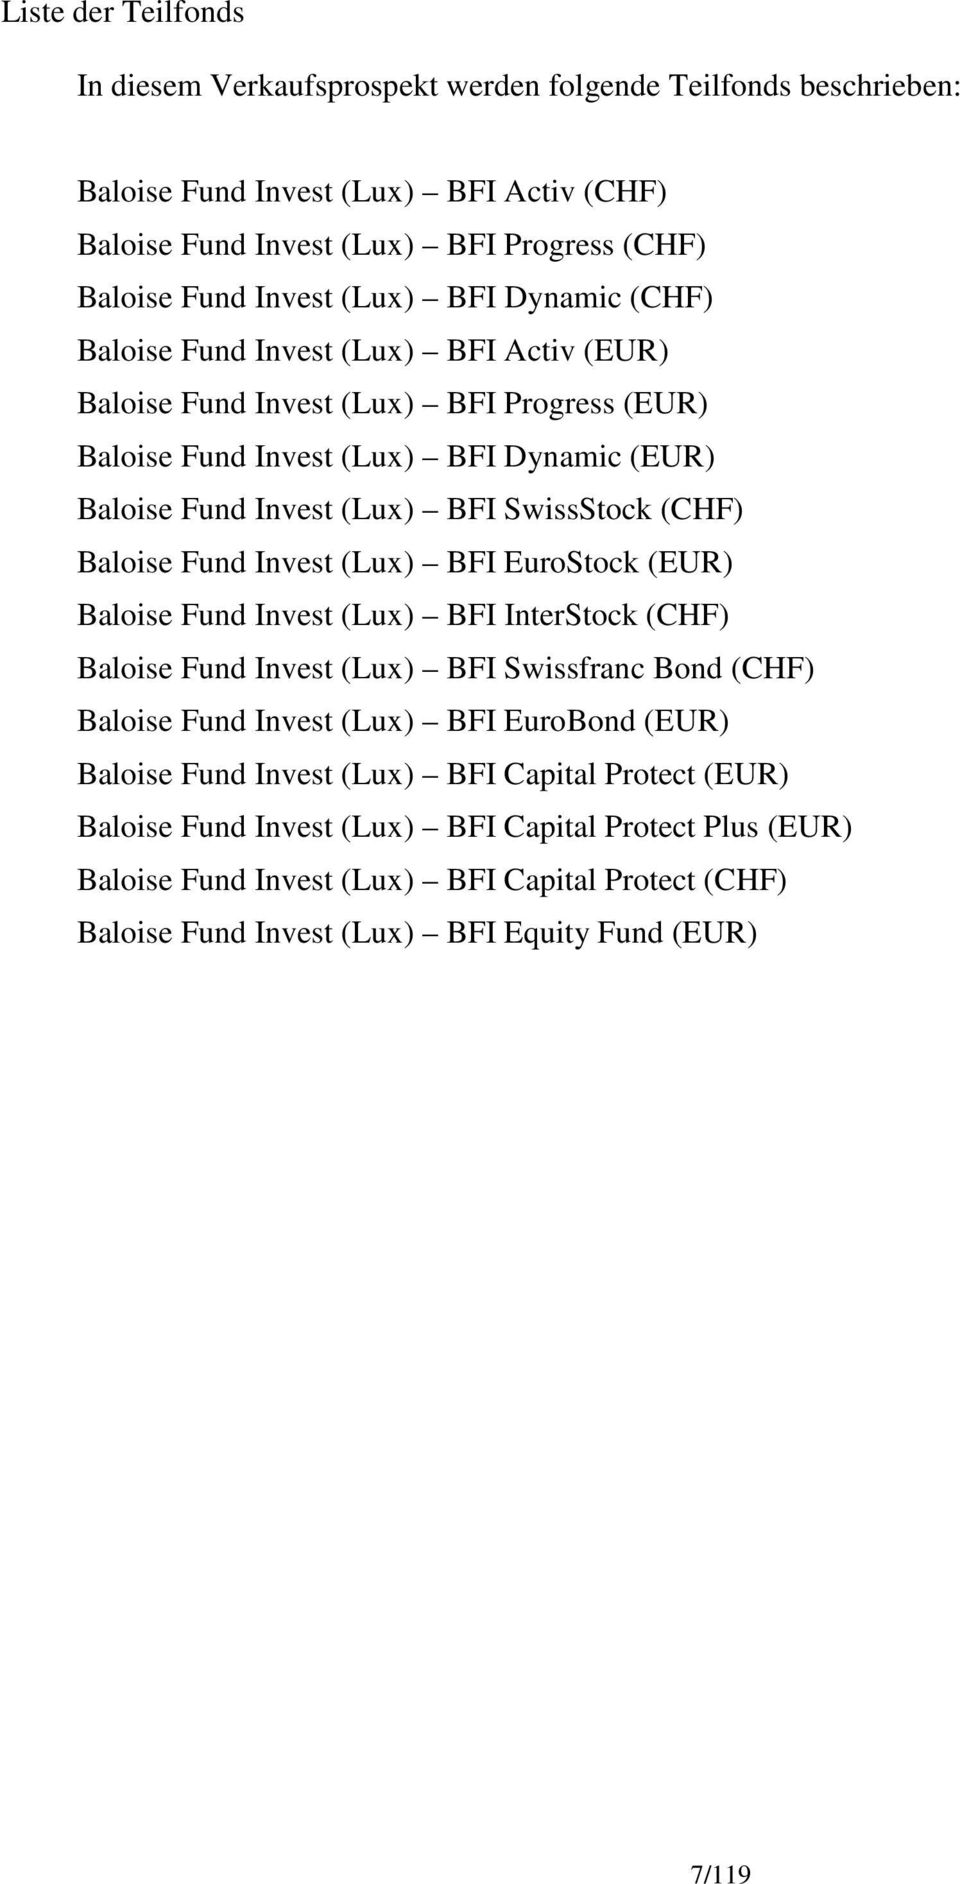 Baloise Fund Invest (Lux) BFI EuroStock (EUR) Baloise Fund Invest (Lux) BFI InterStock (CHF) Baloise Fund Invest (Lux) BFI Swissfranc Bond (CHF) Baloise Fund Invest (Lux) BFI EuroBond (EUR) Baloise